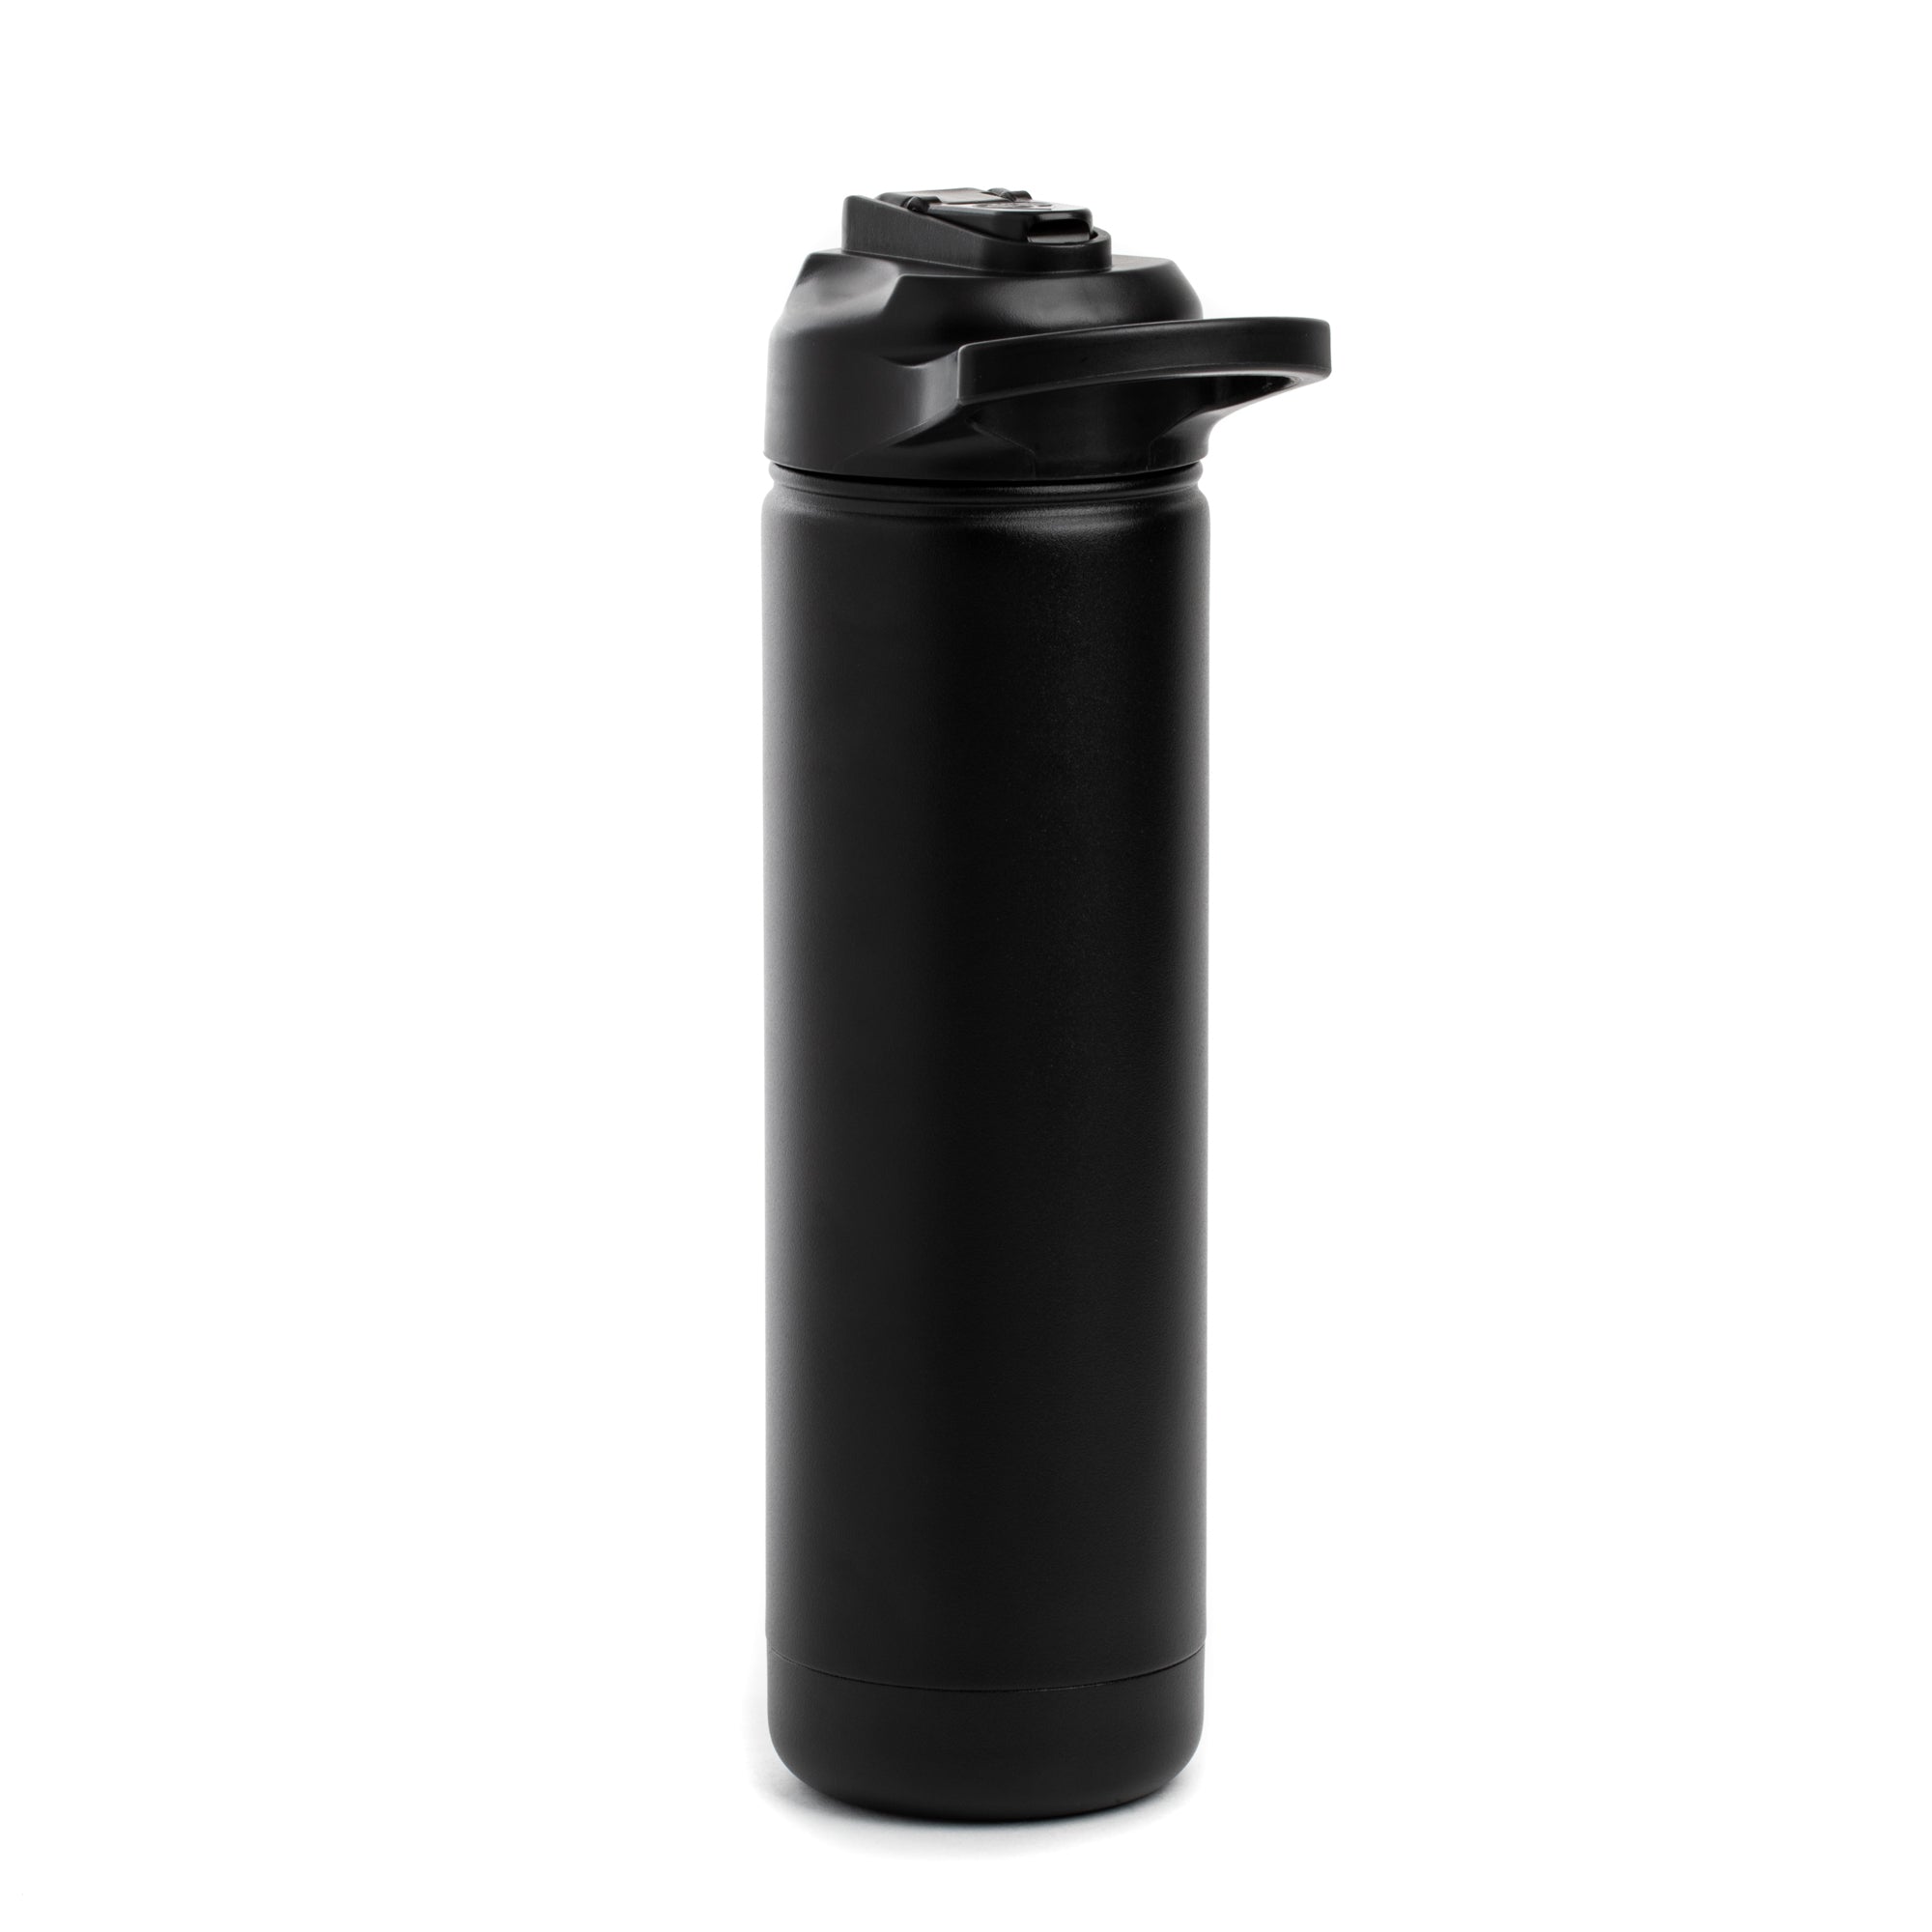 IWOM Stainless Steel Ranger Water Bottle 40 fl oz by TAL – IWOM Outerwear